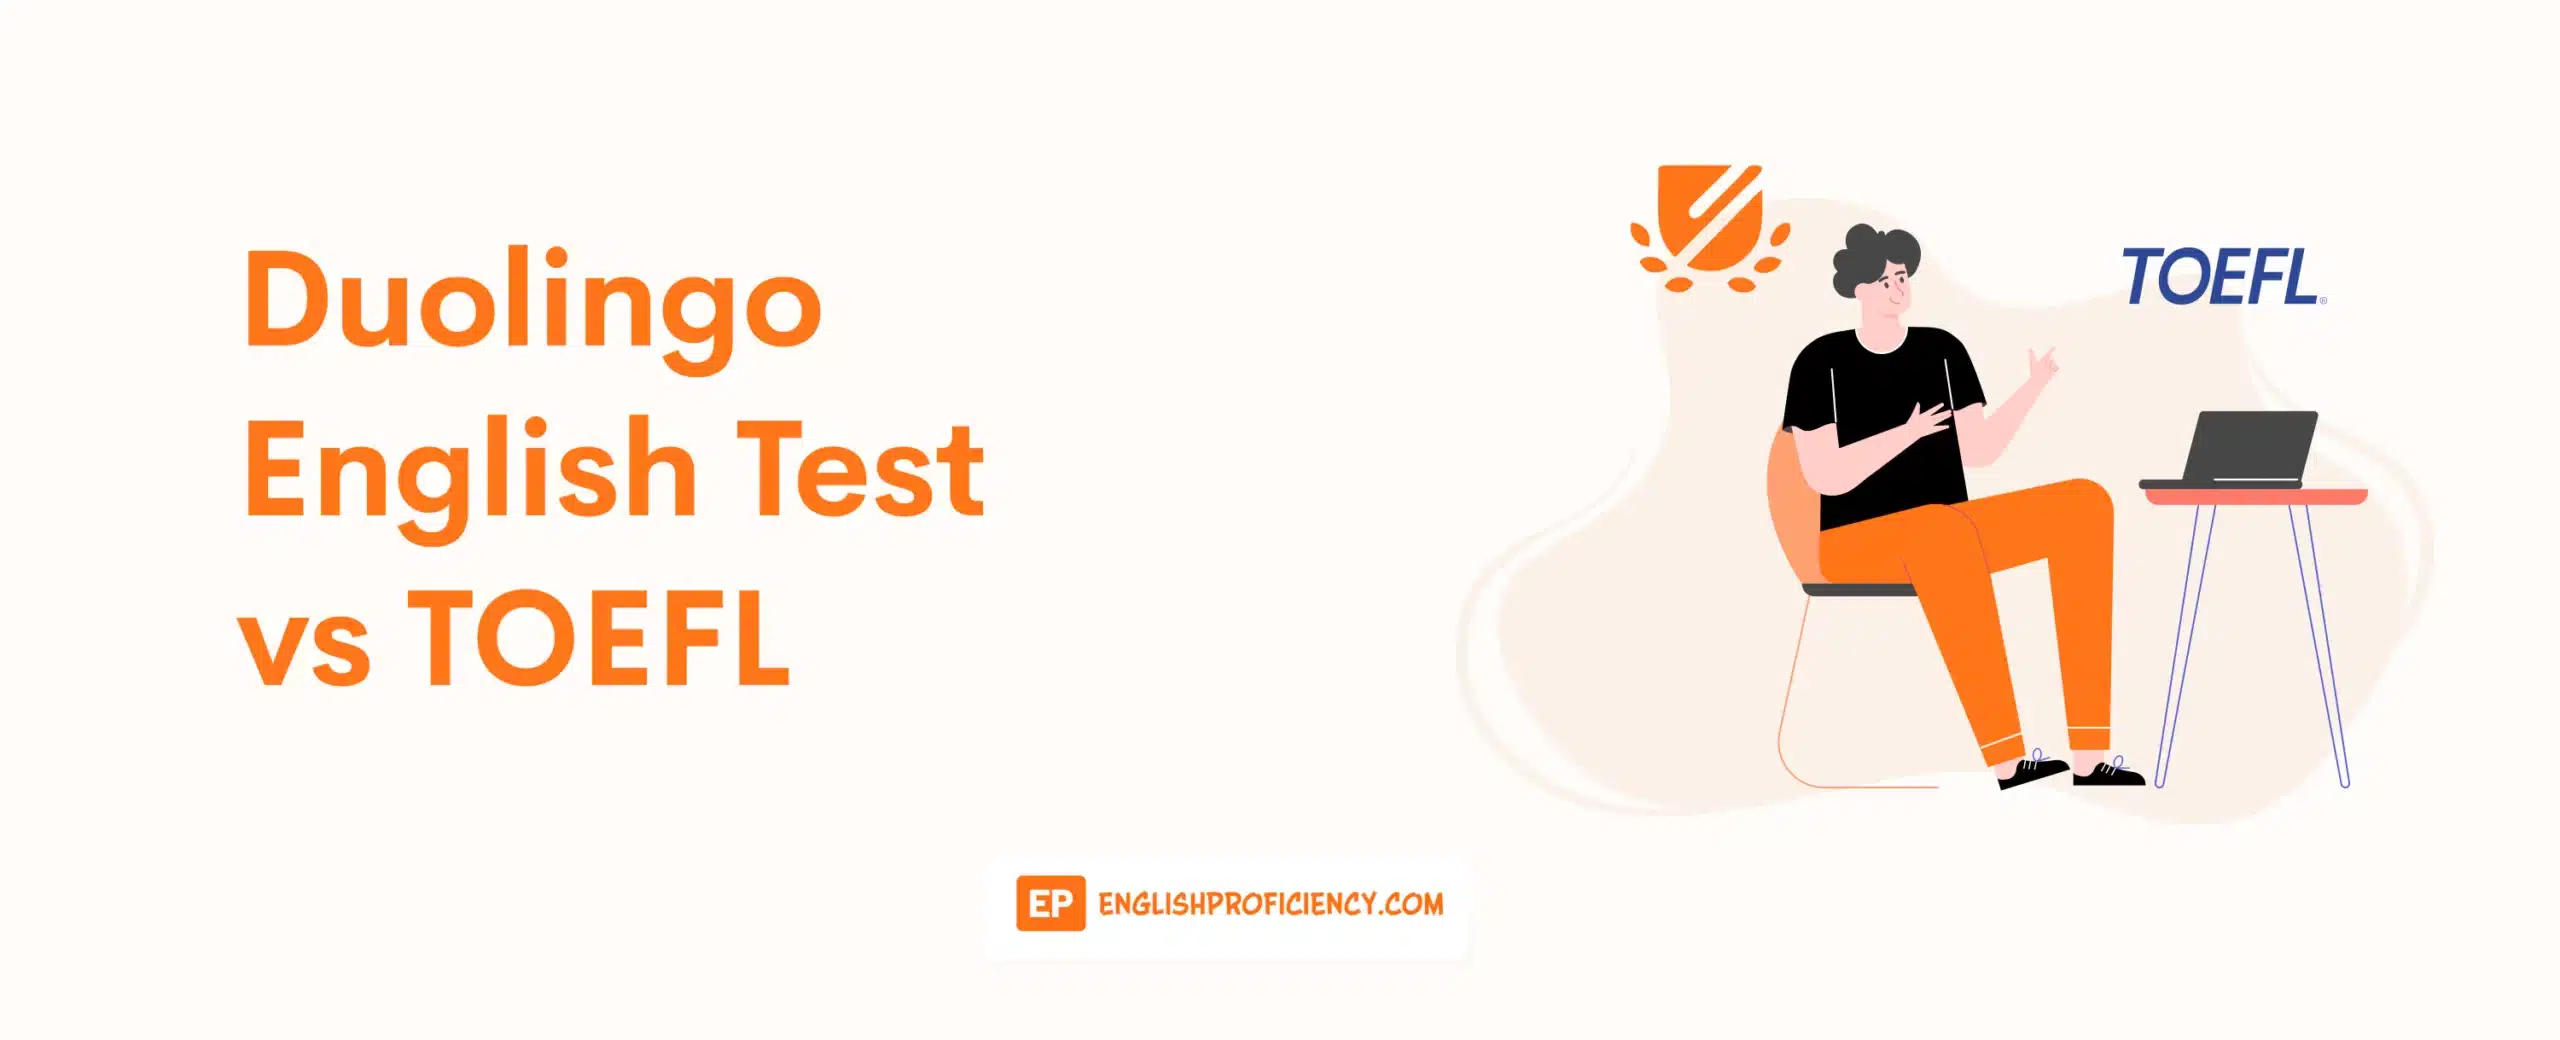 Duolingo English Test vs TOEFL